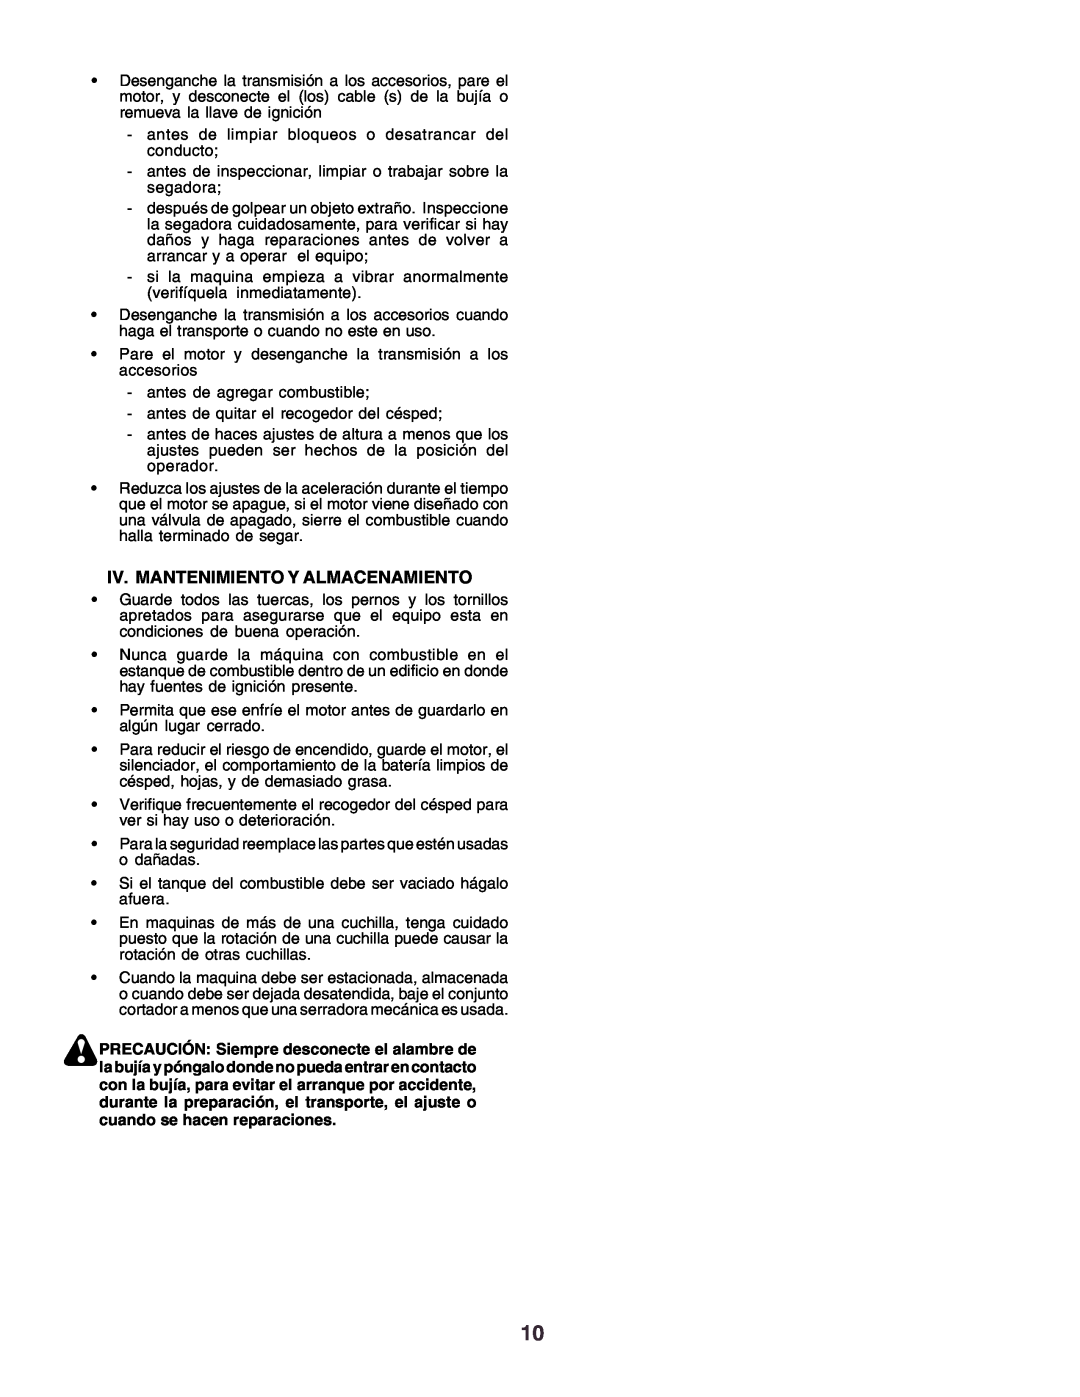 Husqvarna CT130 instruction manual Iv. Mantenimiento Y Almacenamiento 